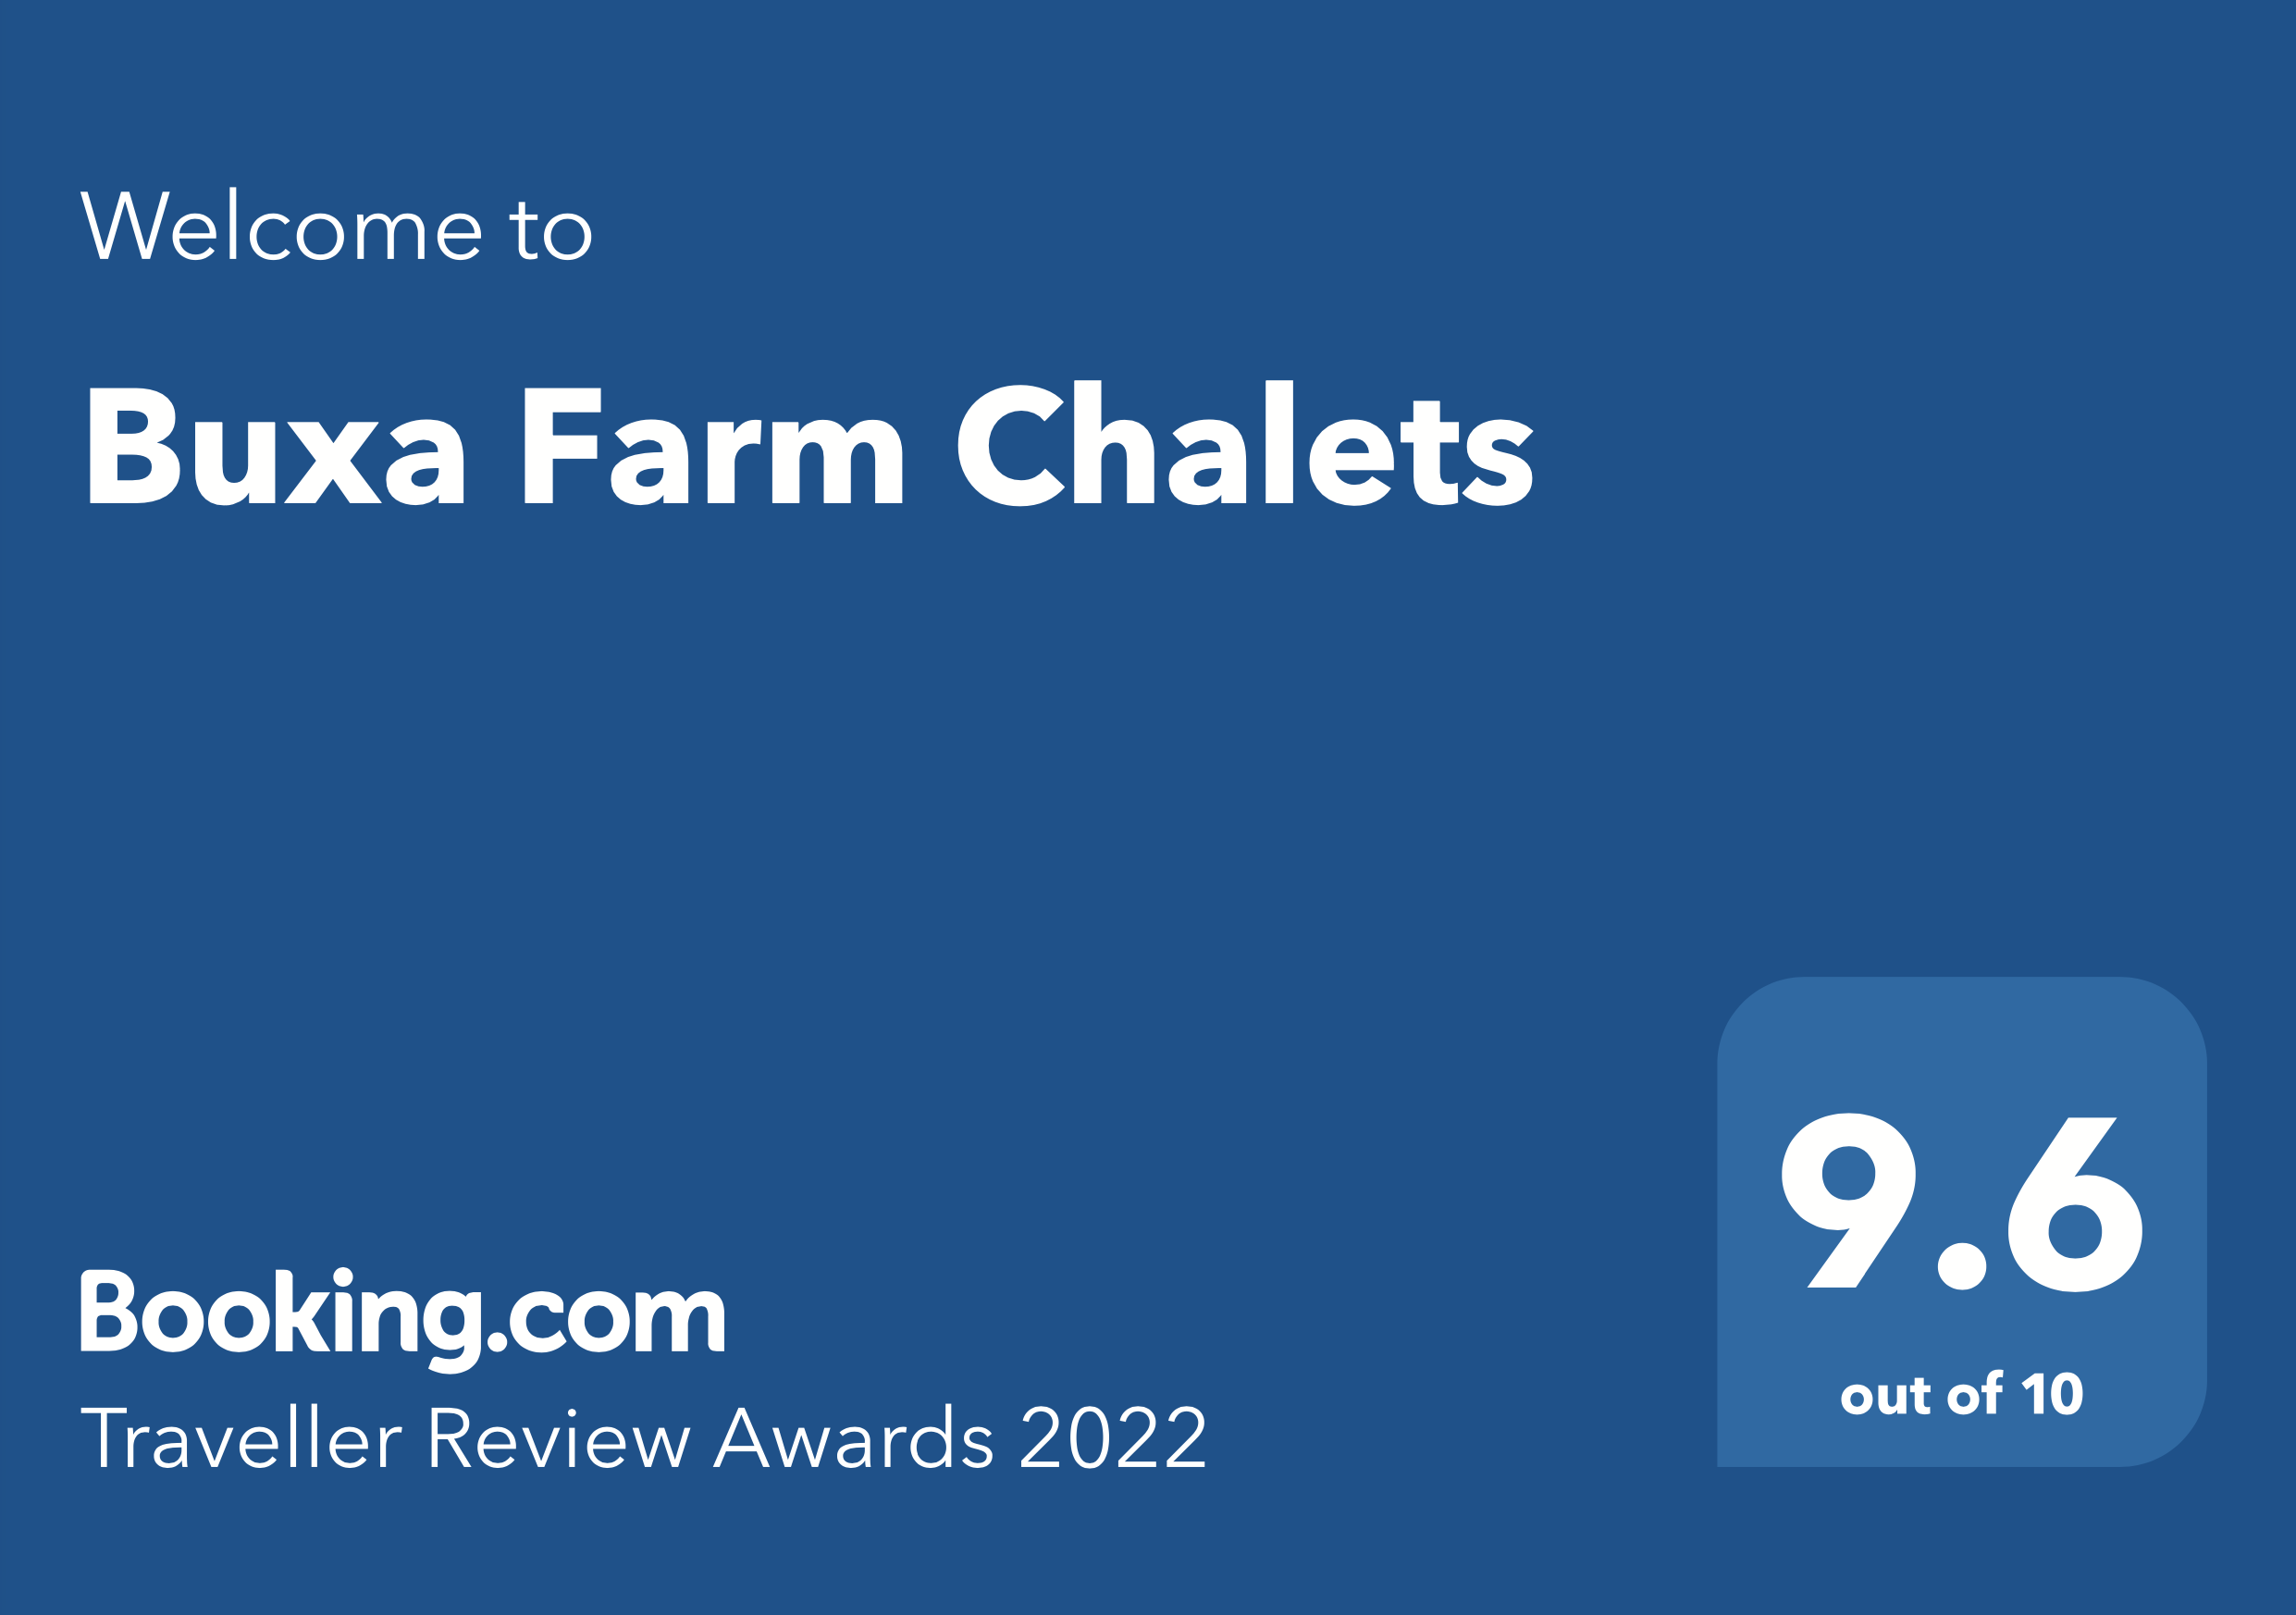 Buxa Chalet Booking.com Award 2022